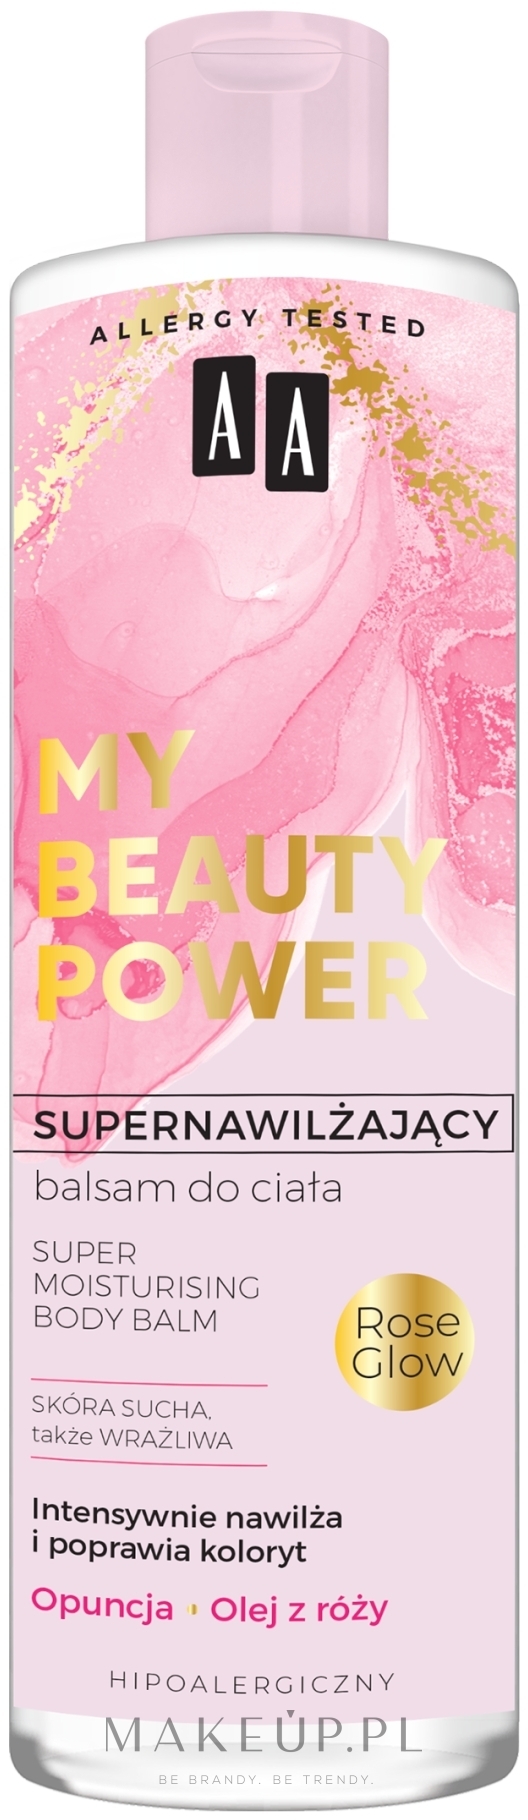 Supernawilżający balsam do ciała Opuncja i olej z róży - AA My Beauty Power Super Moisturizing Body Balm — Zdjęcie 400 ml